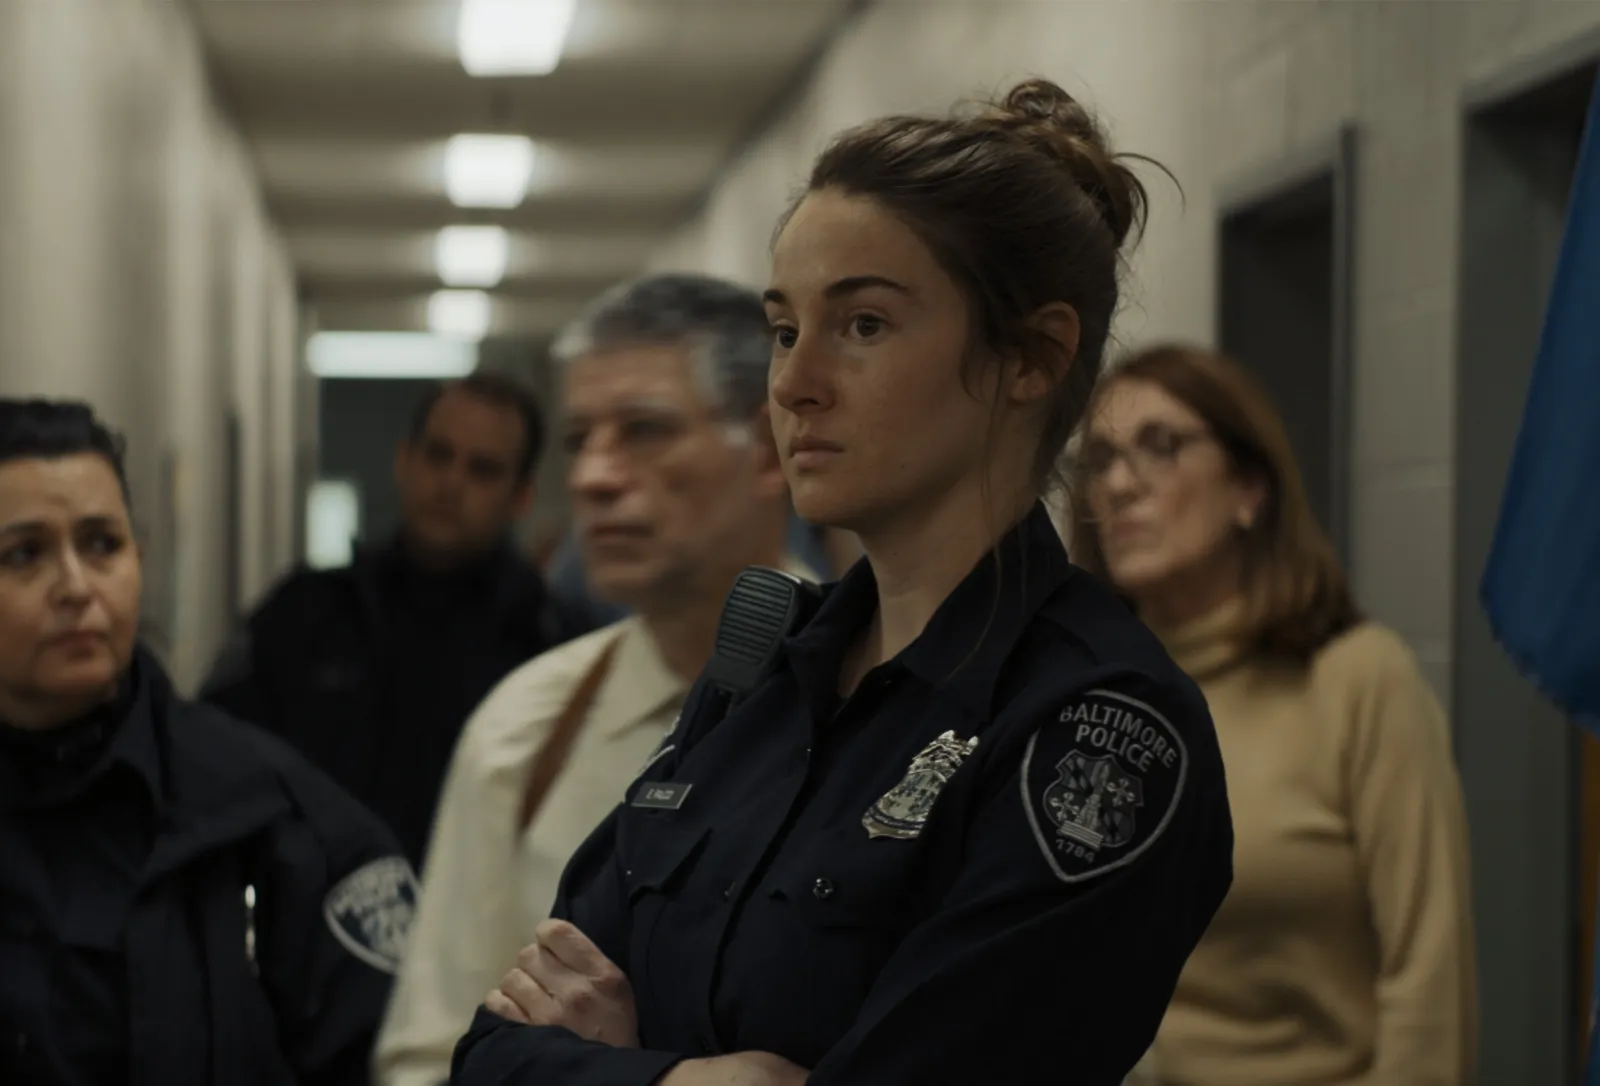 Шейлин Вудли играет в фильме патрульную Эленор - типичную одиночку, но жаждущую помогать людям.